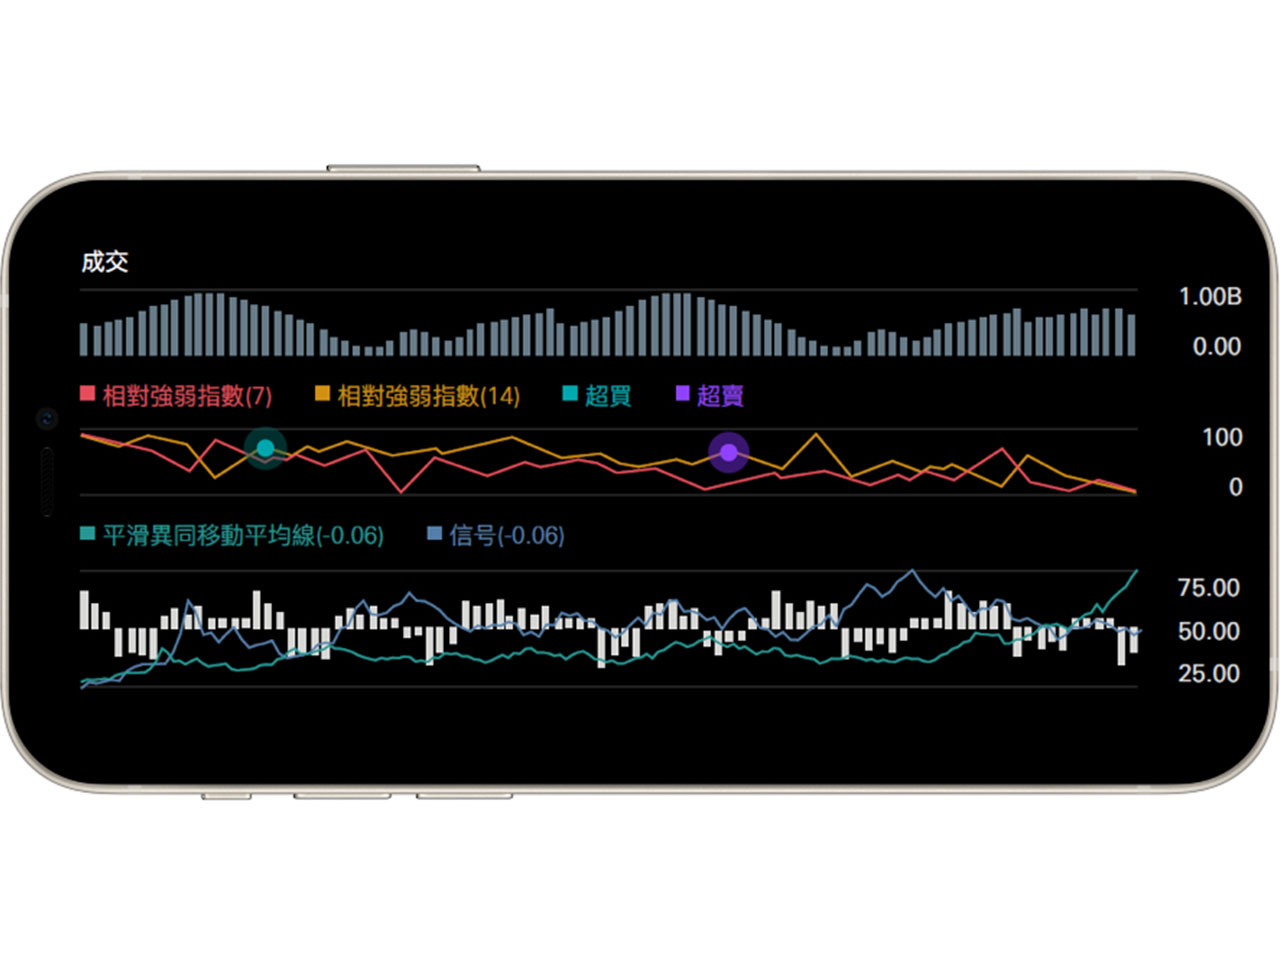 香港汇丰流动理财应用程序画面截图；显示股价图表